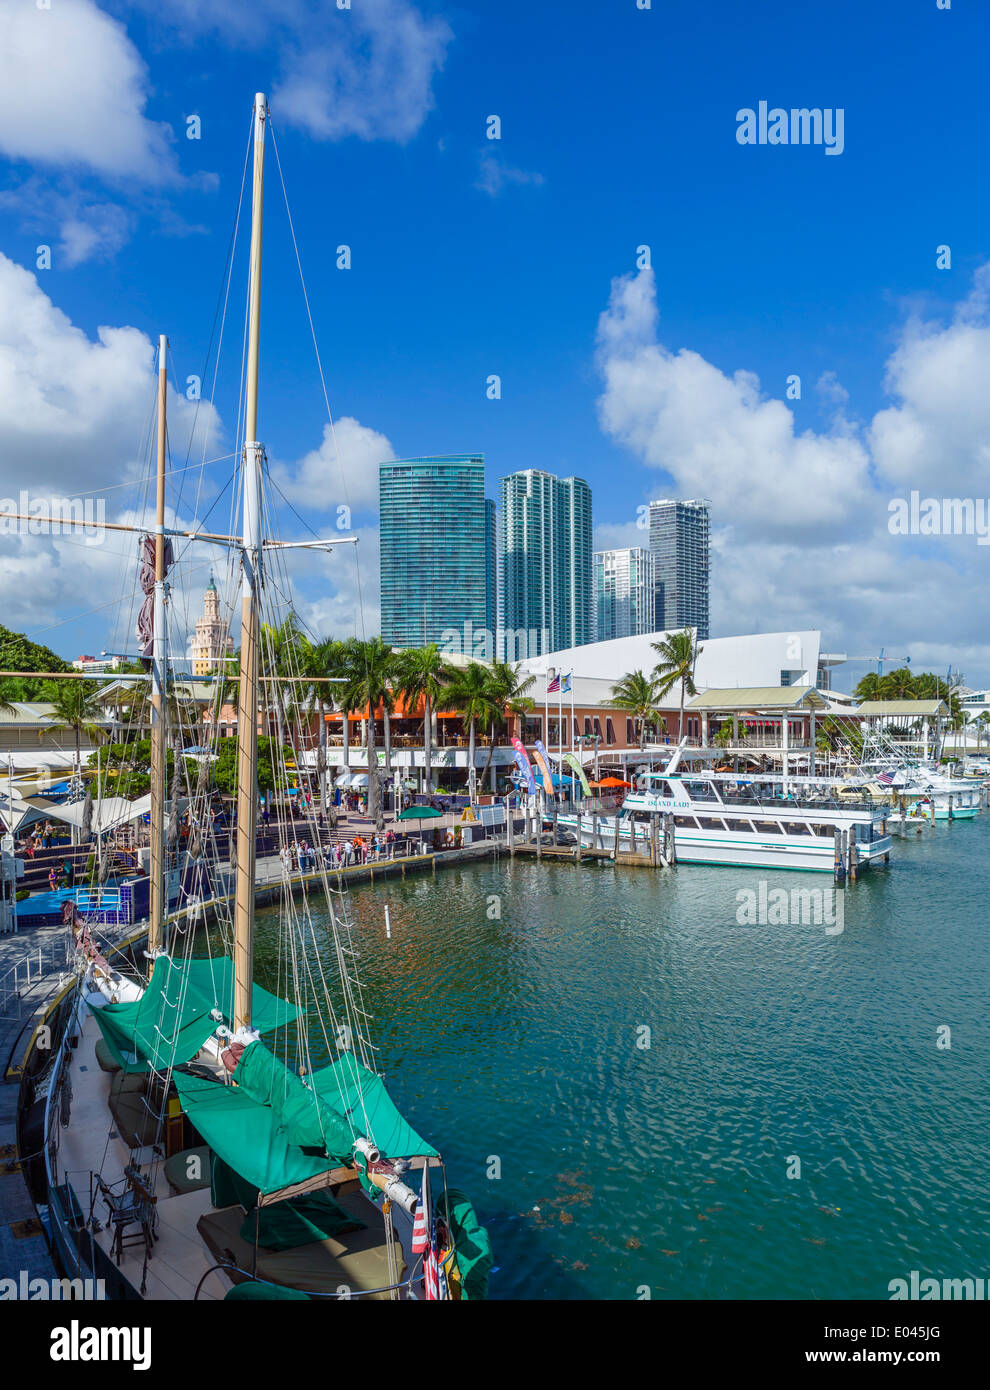 Le front de mer au marché de Bayside dans le centre-ville de Miami, Floride, USA Banque D'Images